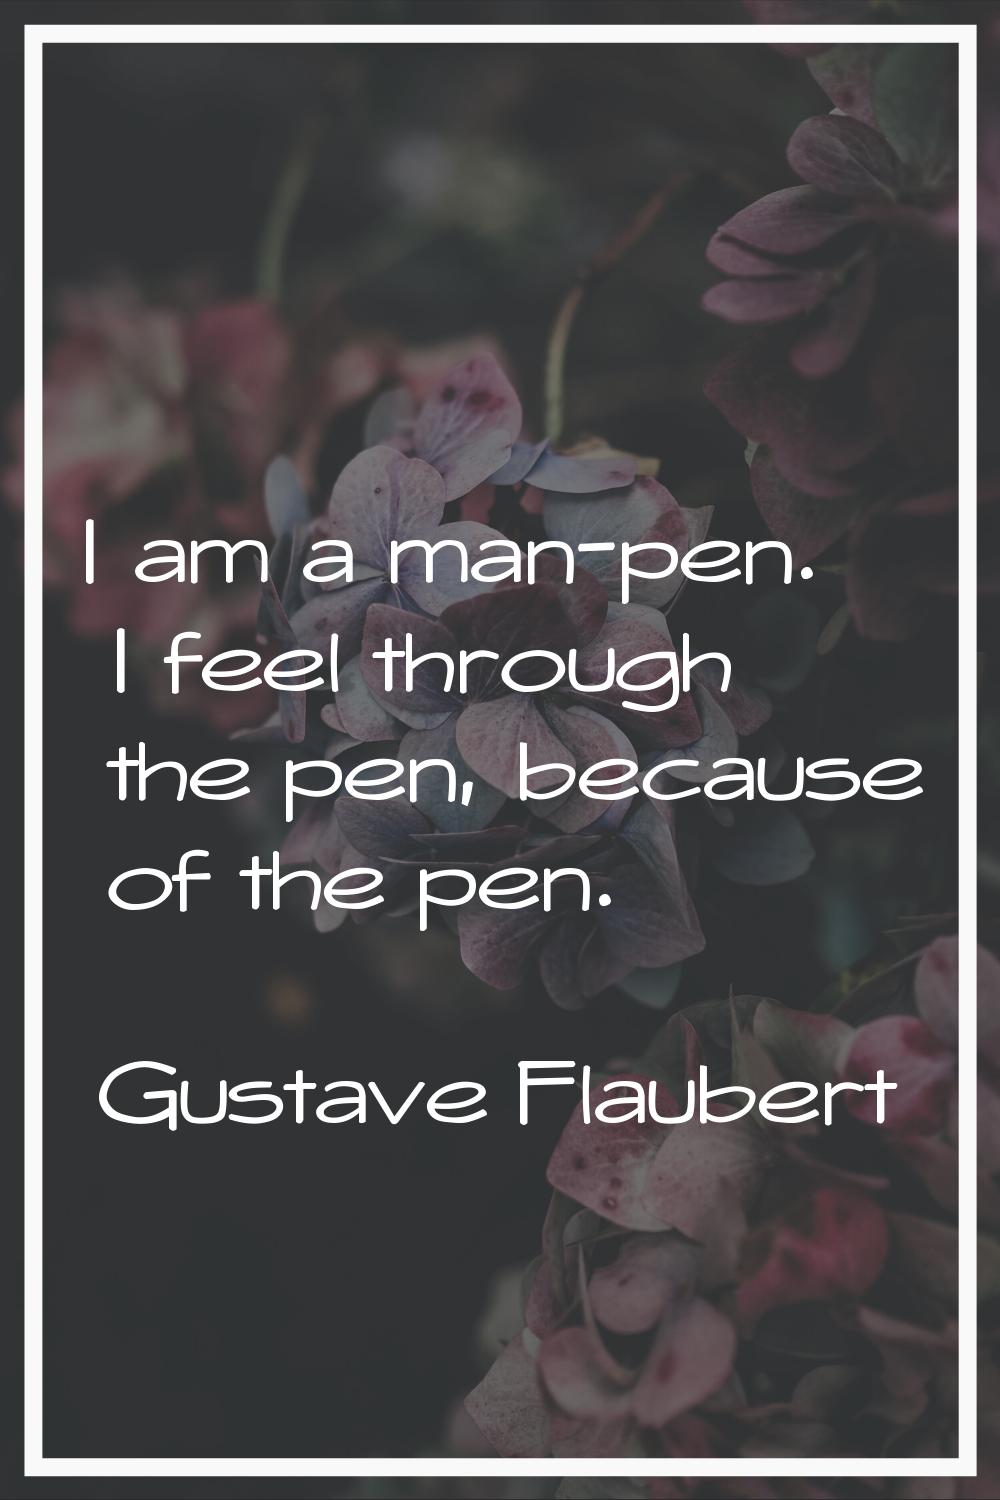 I am a man-pen. I feel through the pen, because of the pen.